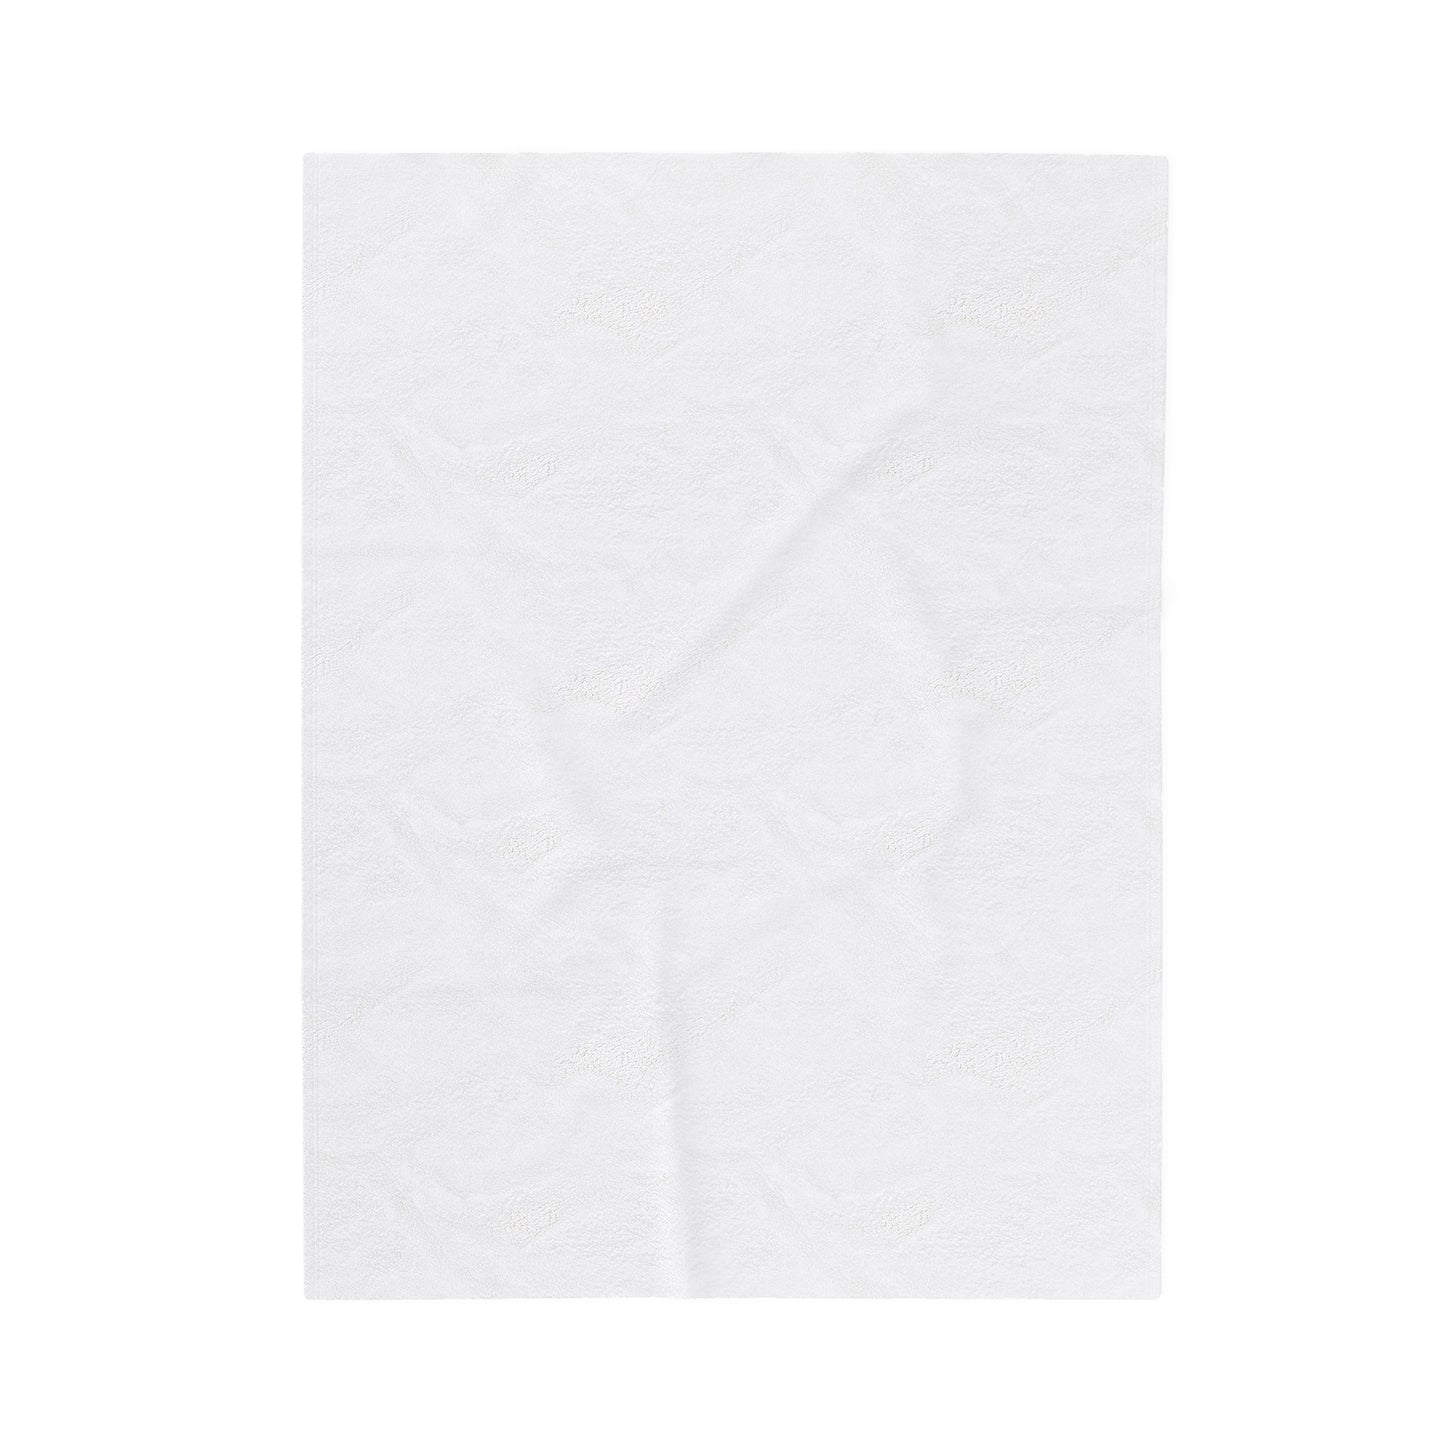 Missing Thread - Velveteen Plush Blanket